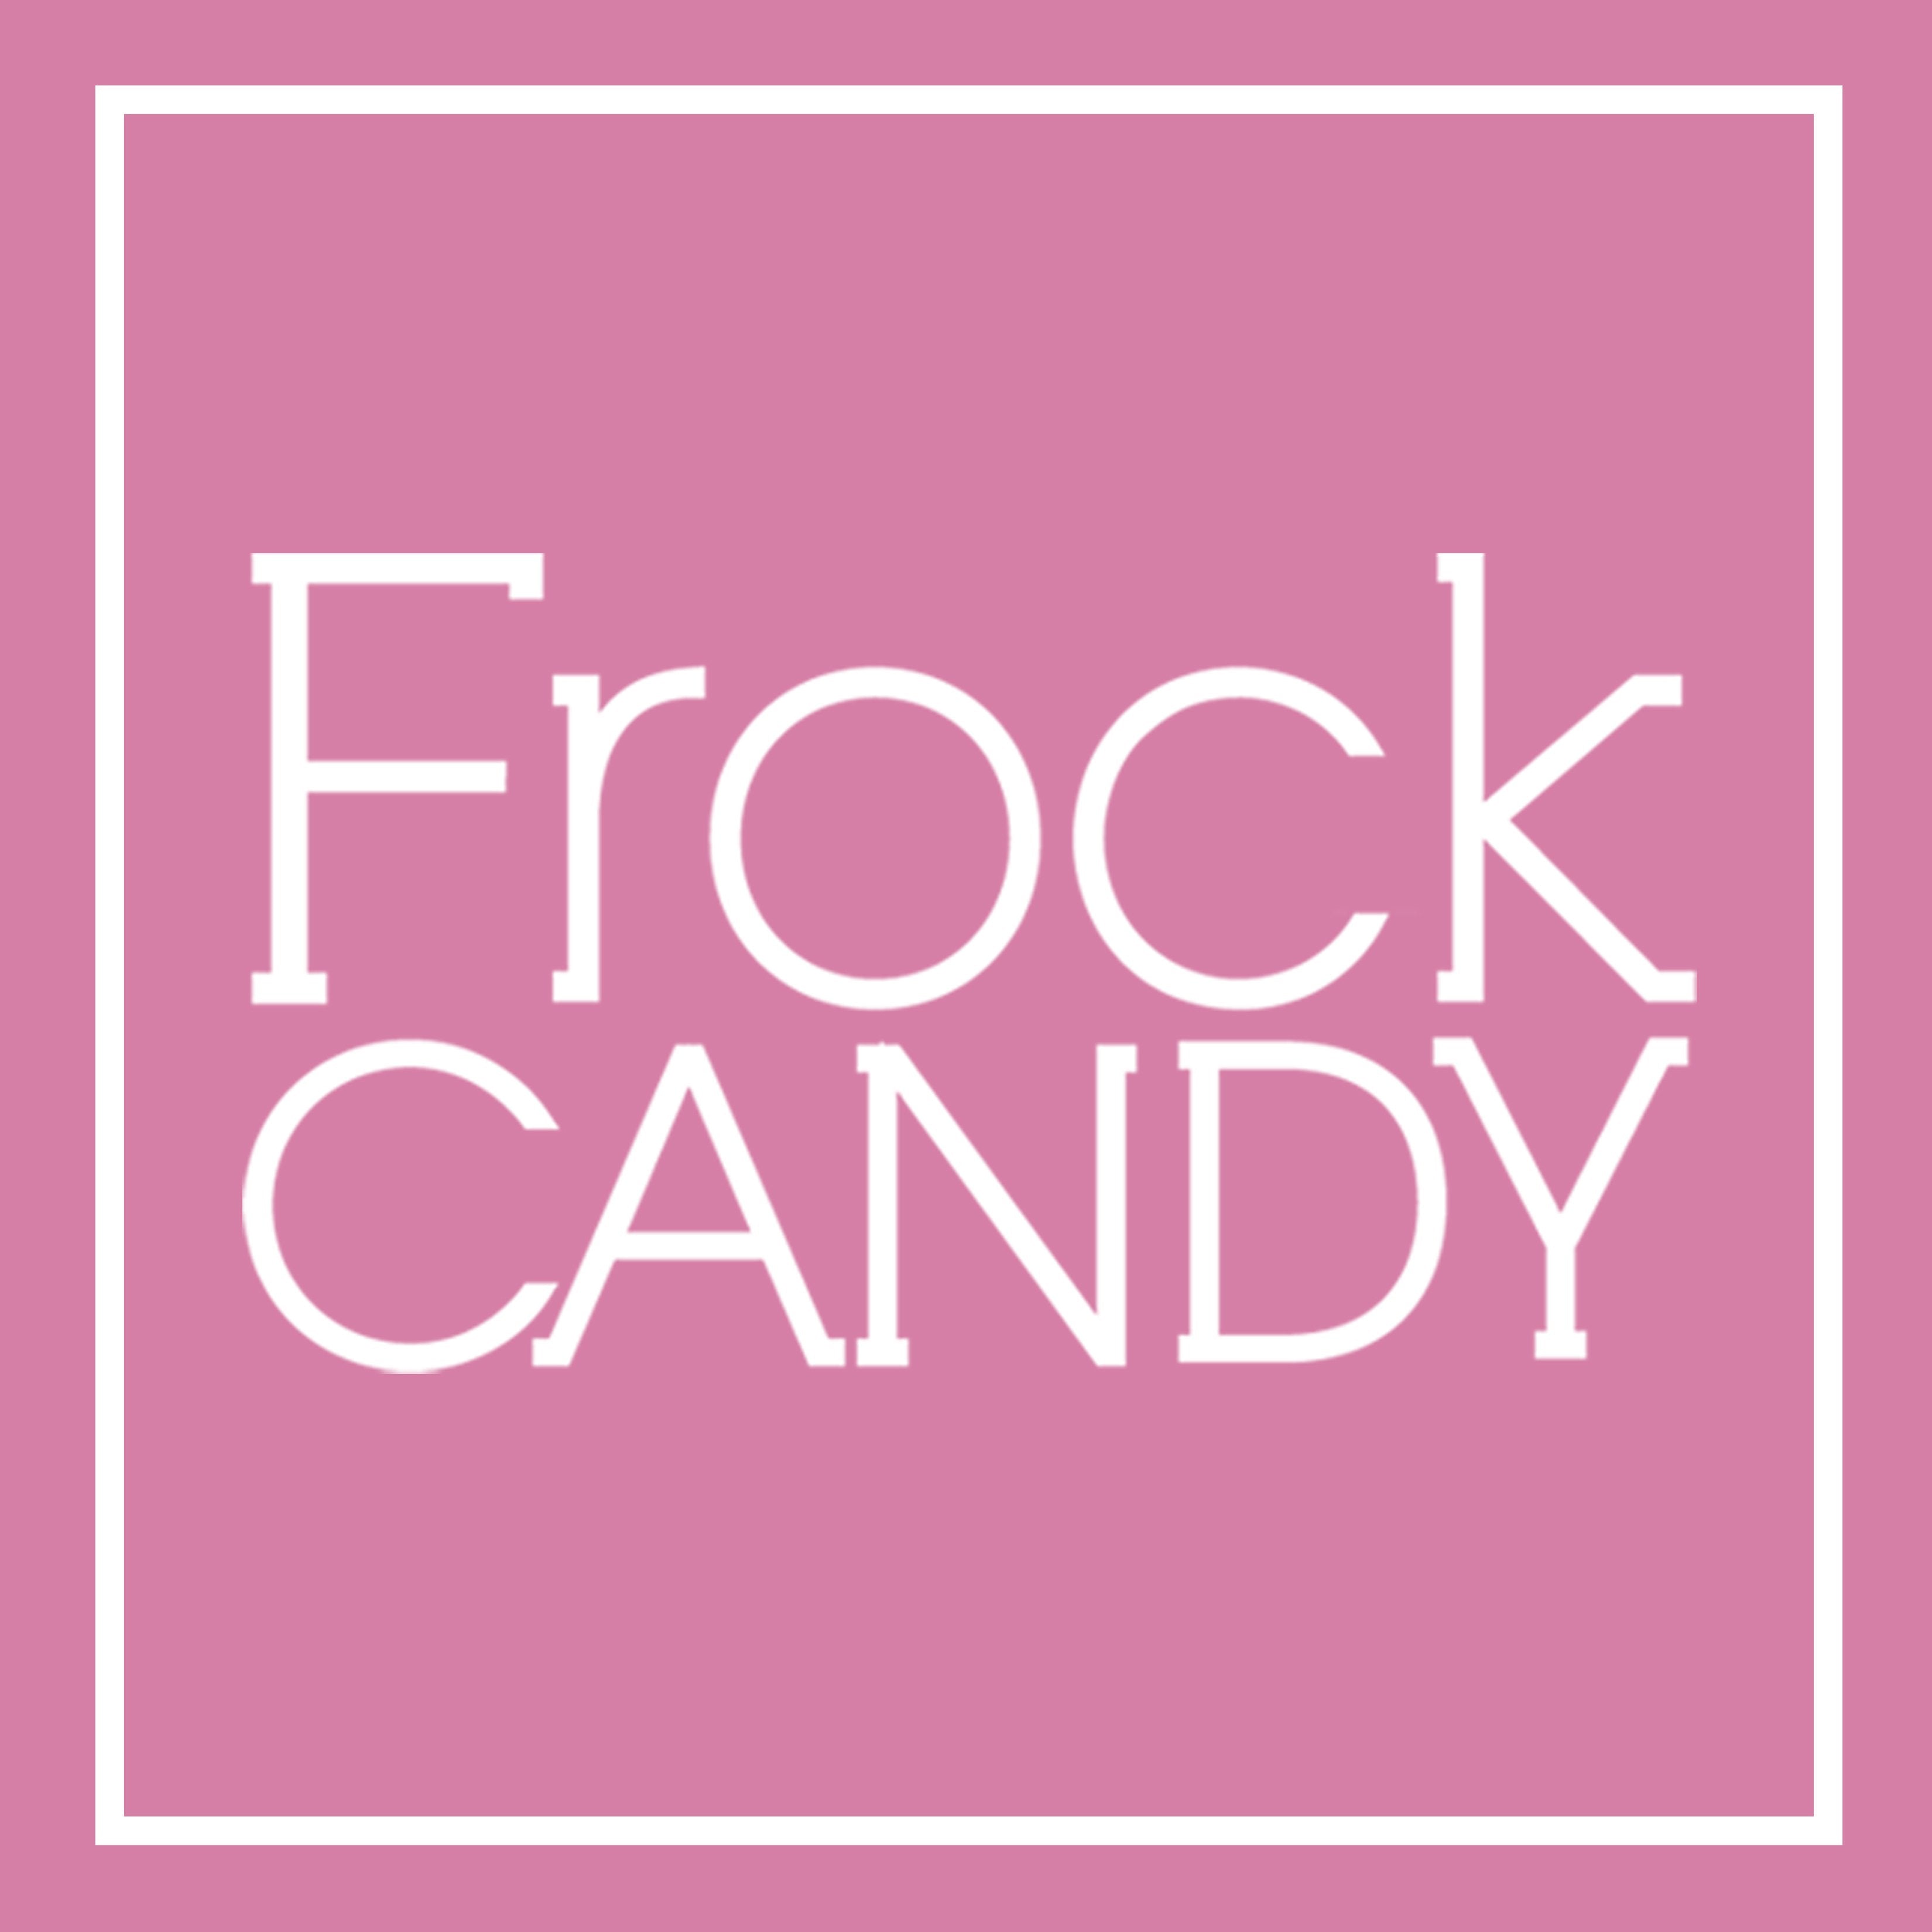 https://www.frockcandy.com/cdn/shop/files/Frock_Candy_Logo_Blush_21a86598-d965-433e-a895-c3b80e0c484b.jpg?v=1600199921